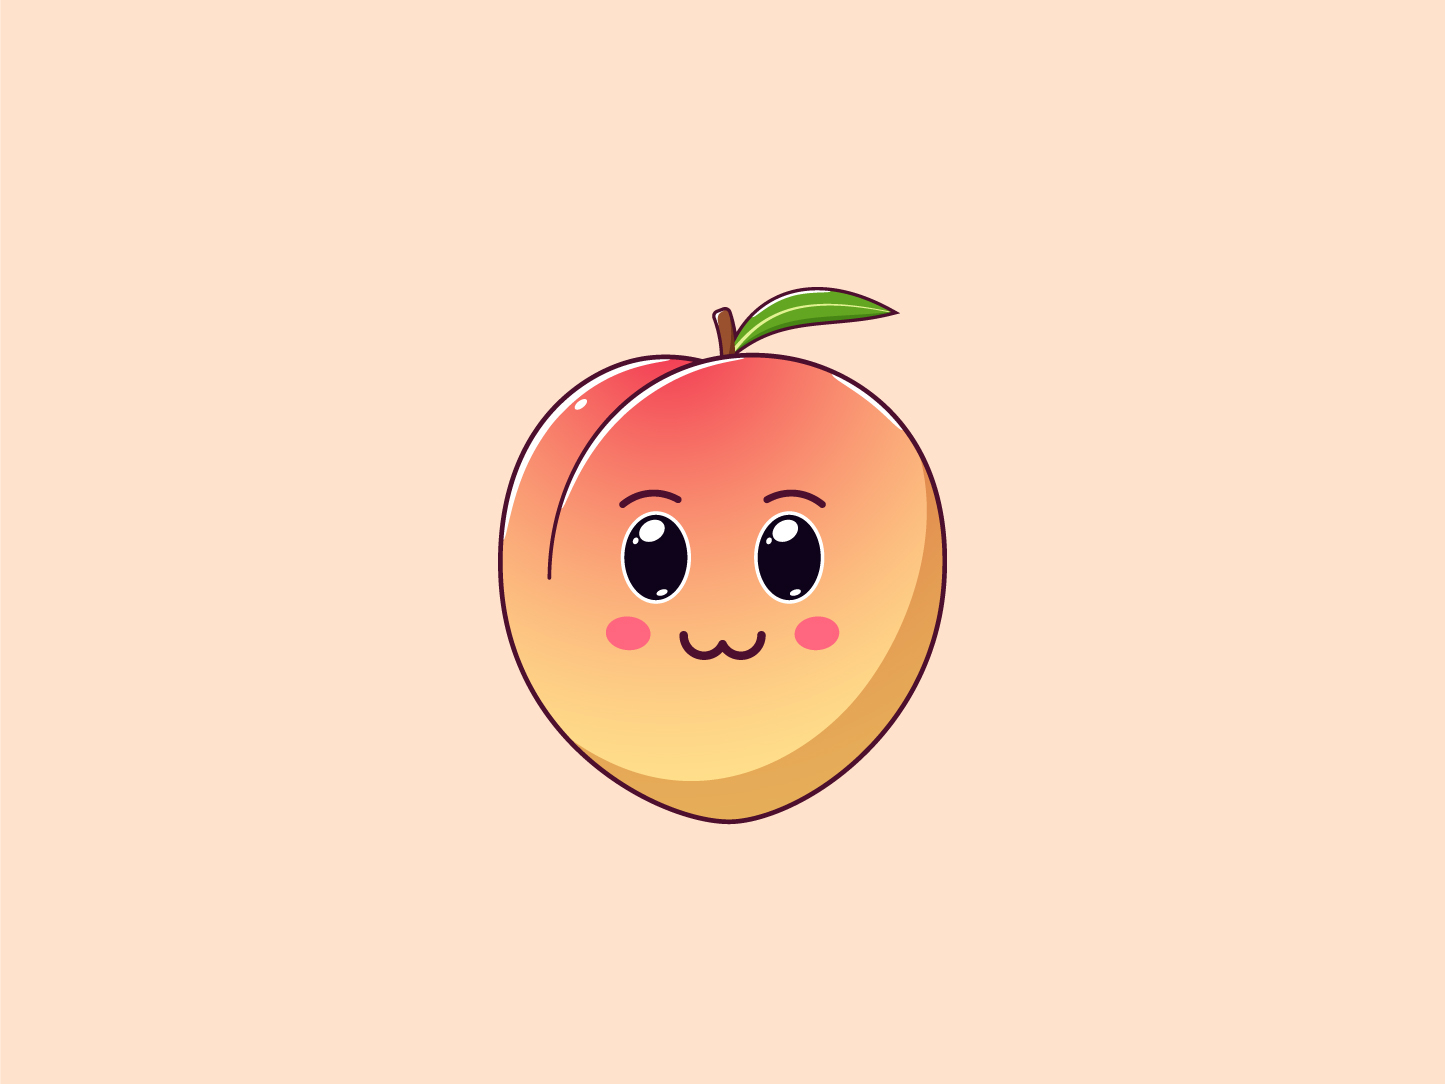 Cute Kawaii Peach, Cartoon Fruit by Dmitry Mayer on Dribbble